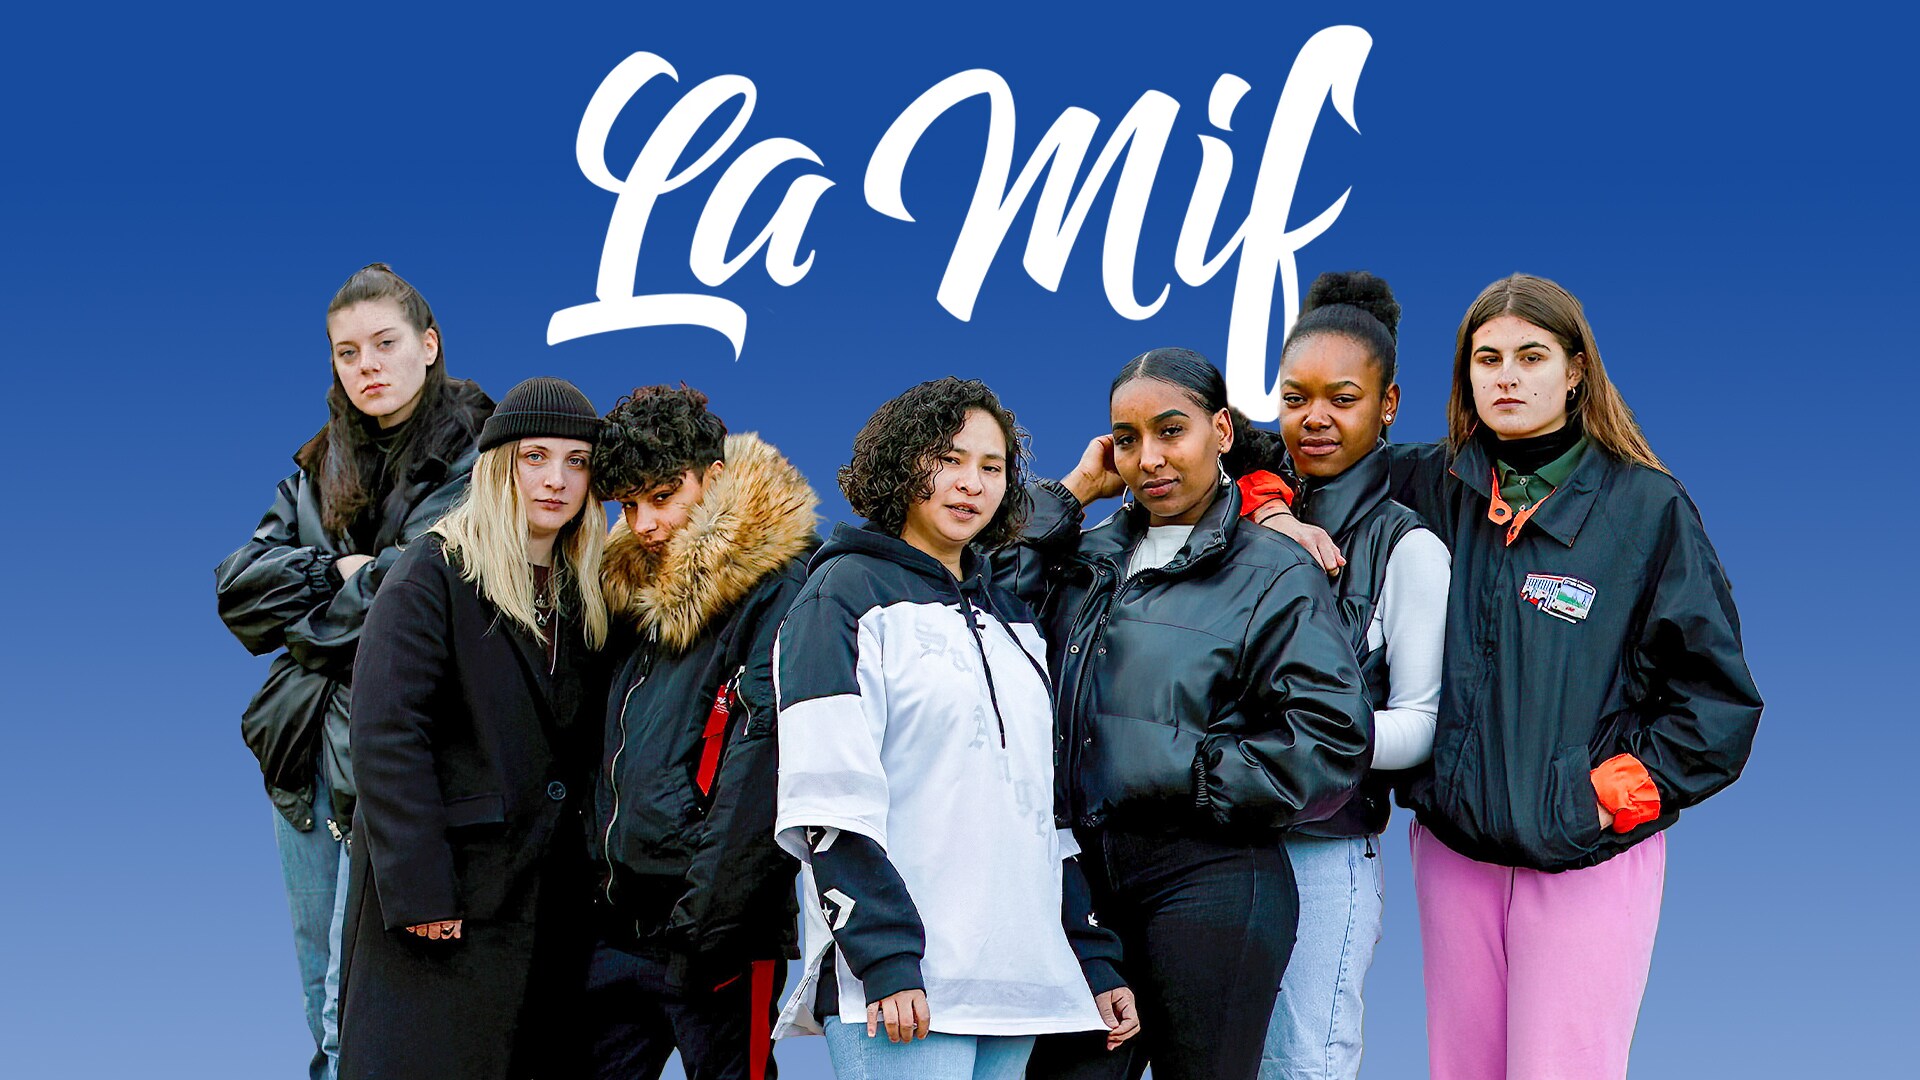 La Mif – Die Familie